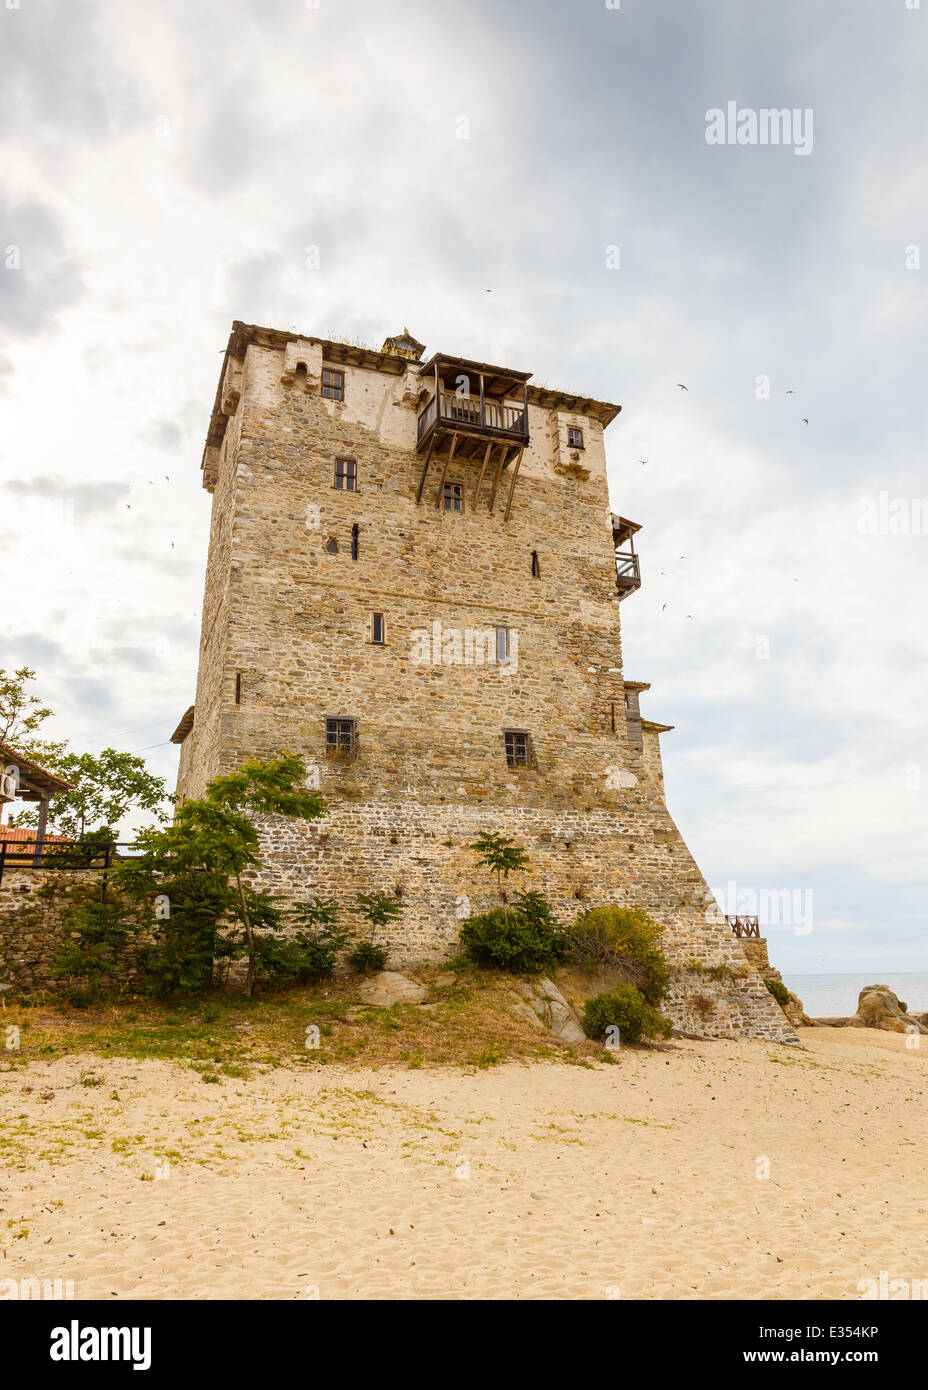 The Prosforio tower in Ouranoupolis, Chalkidiki, Greece Stock Photo